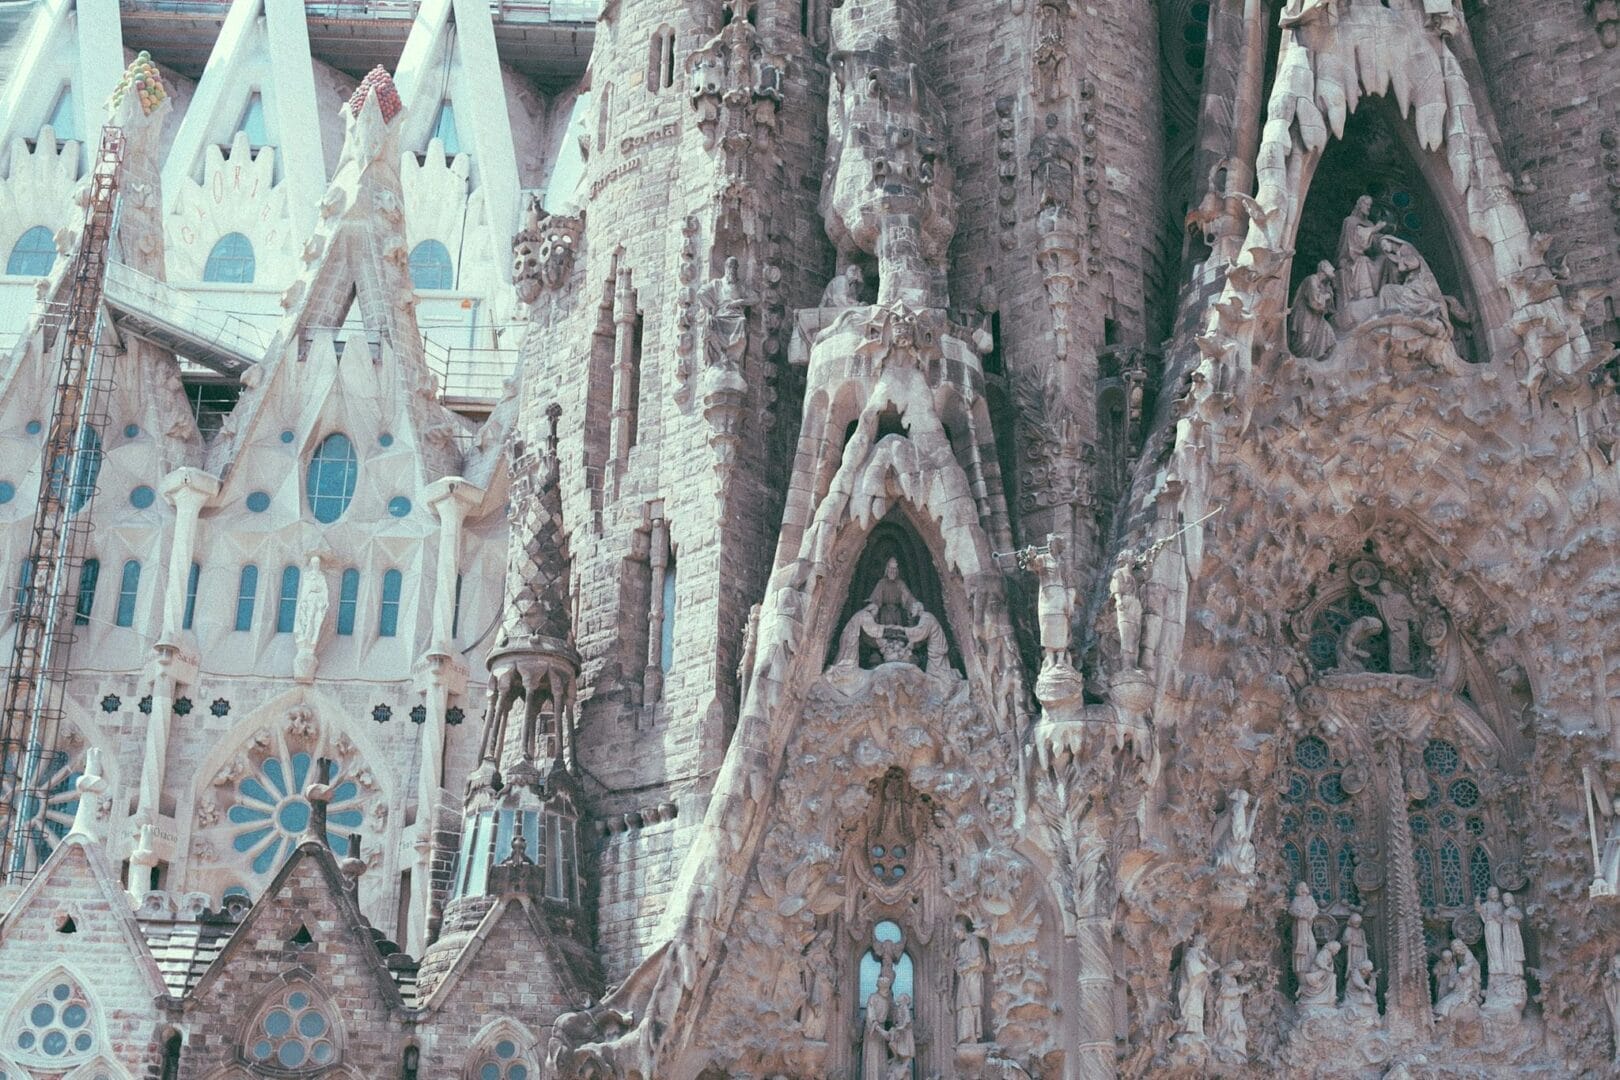 Cattedrale cattolica in stile gotico con sculture e dettagli ornamentali